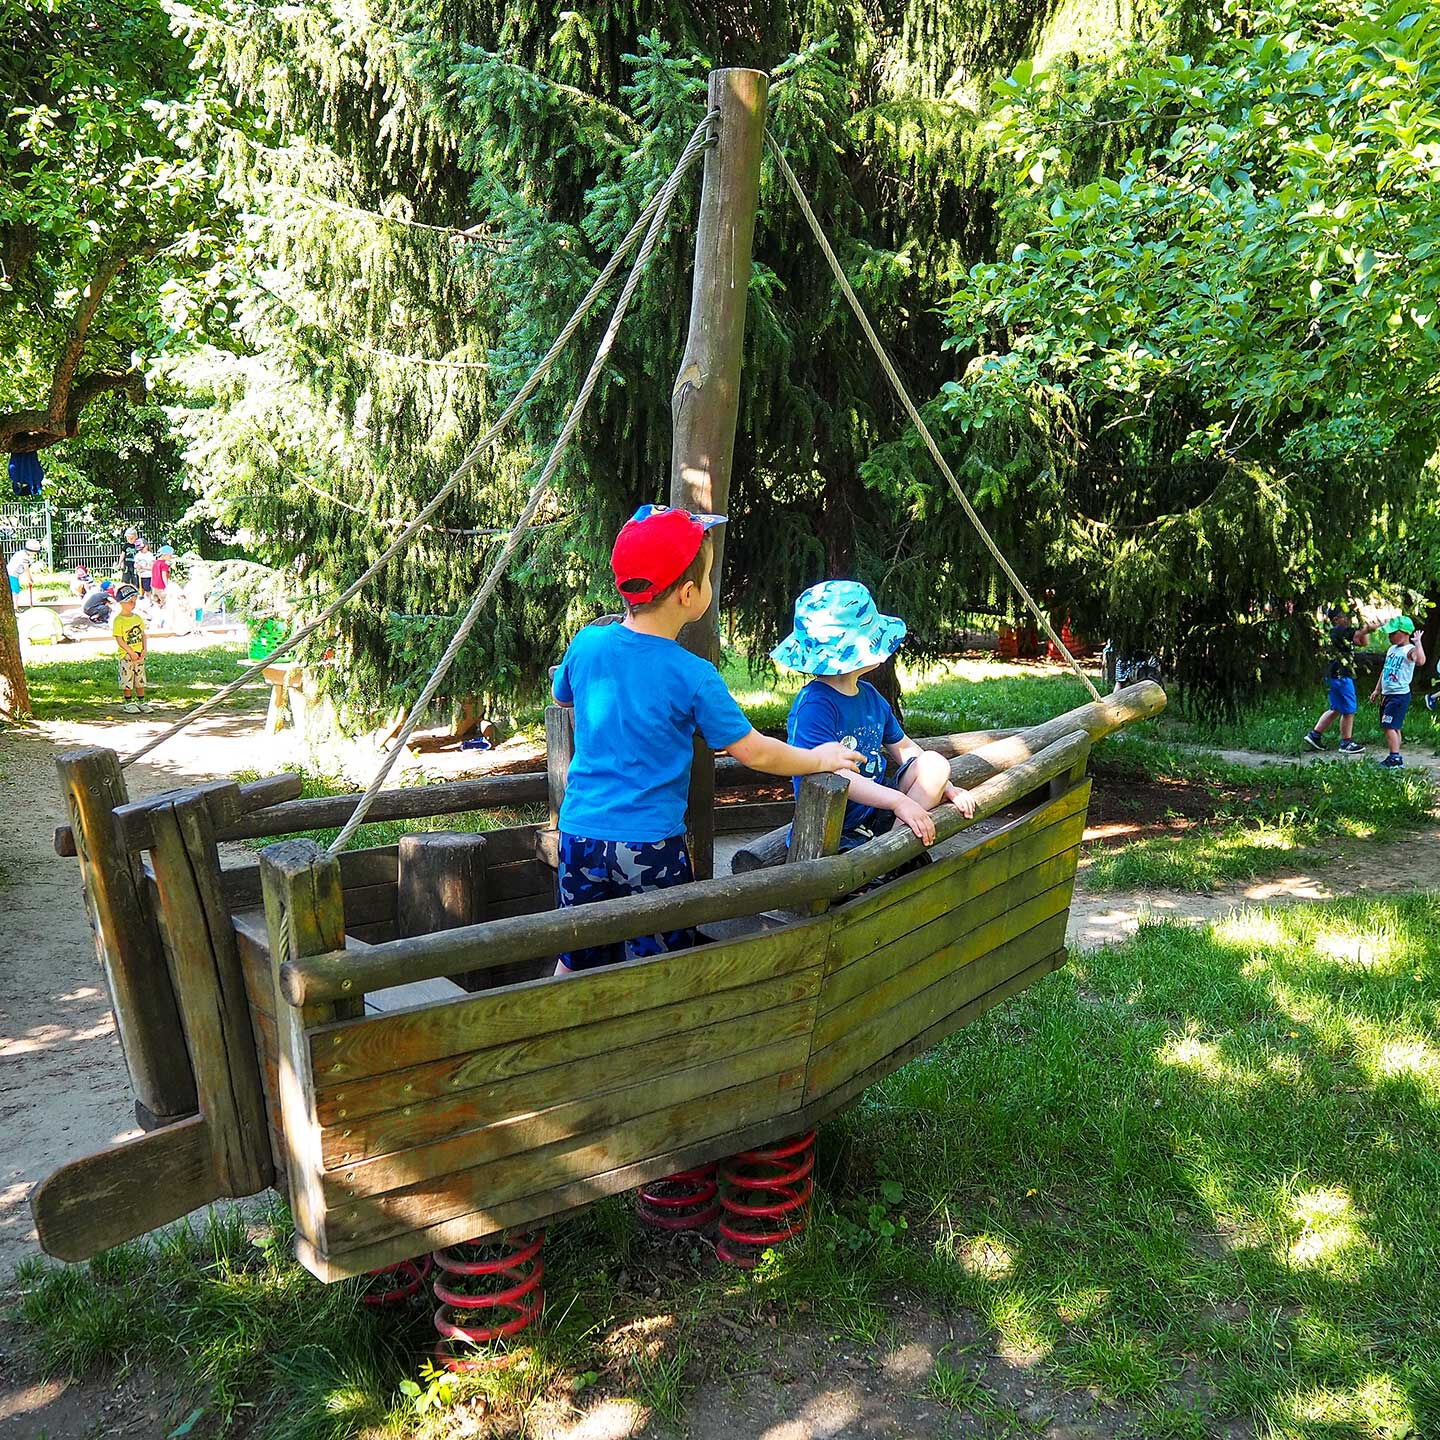 Auf einem Holzschiff im Gartenbereich spielen zwei Kleinkinder.